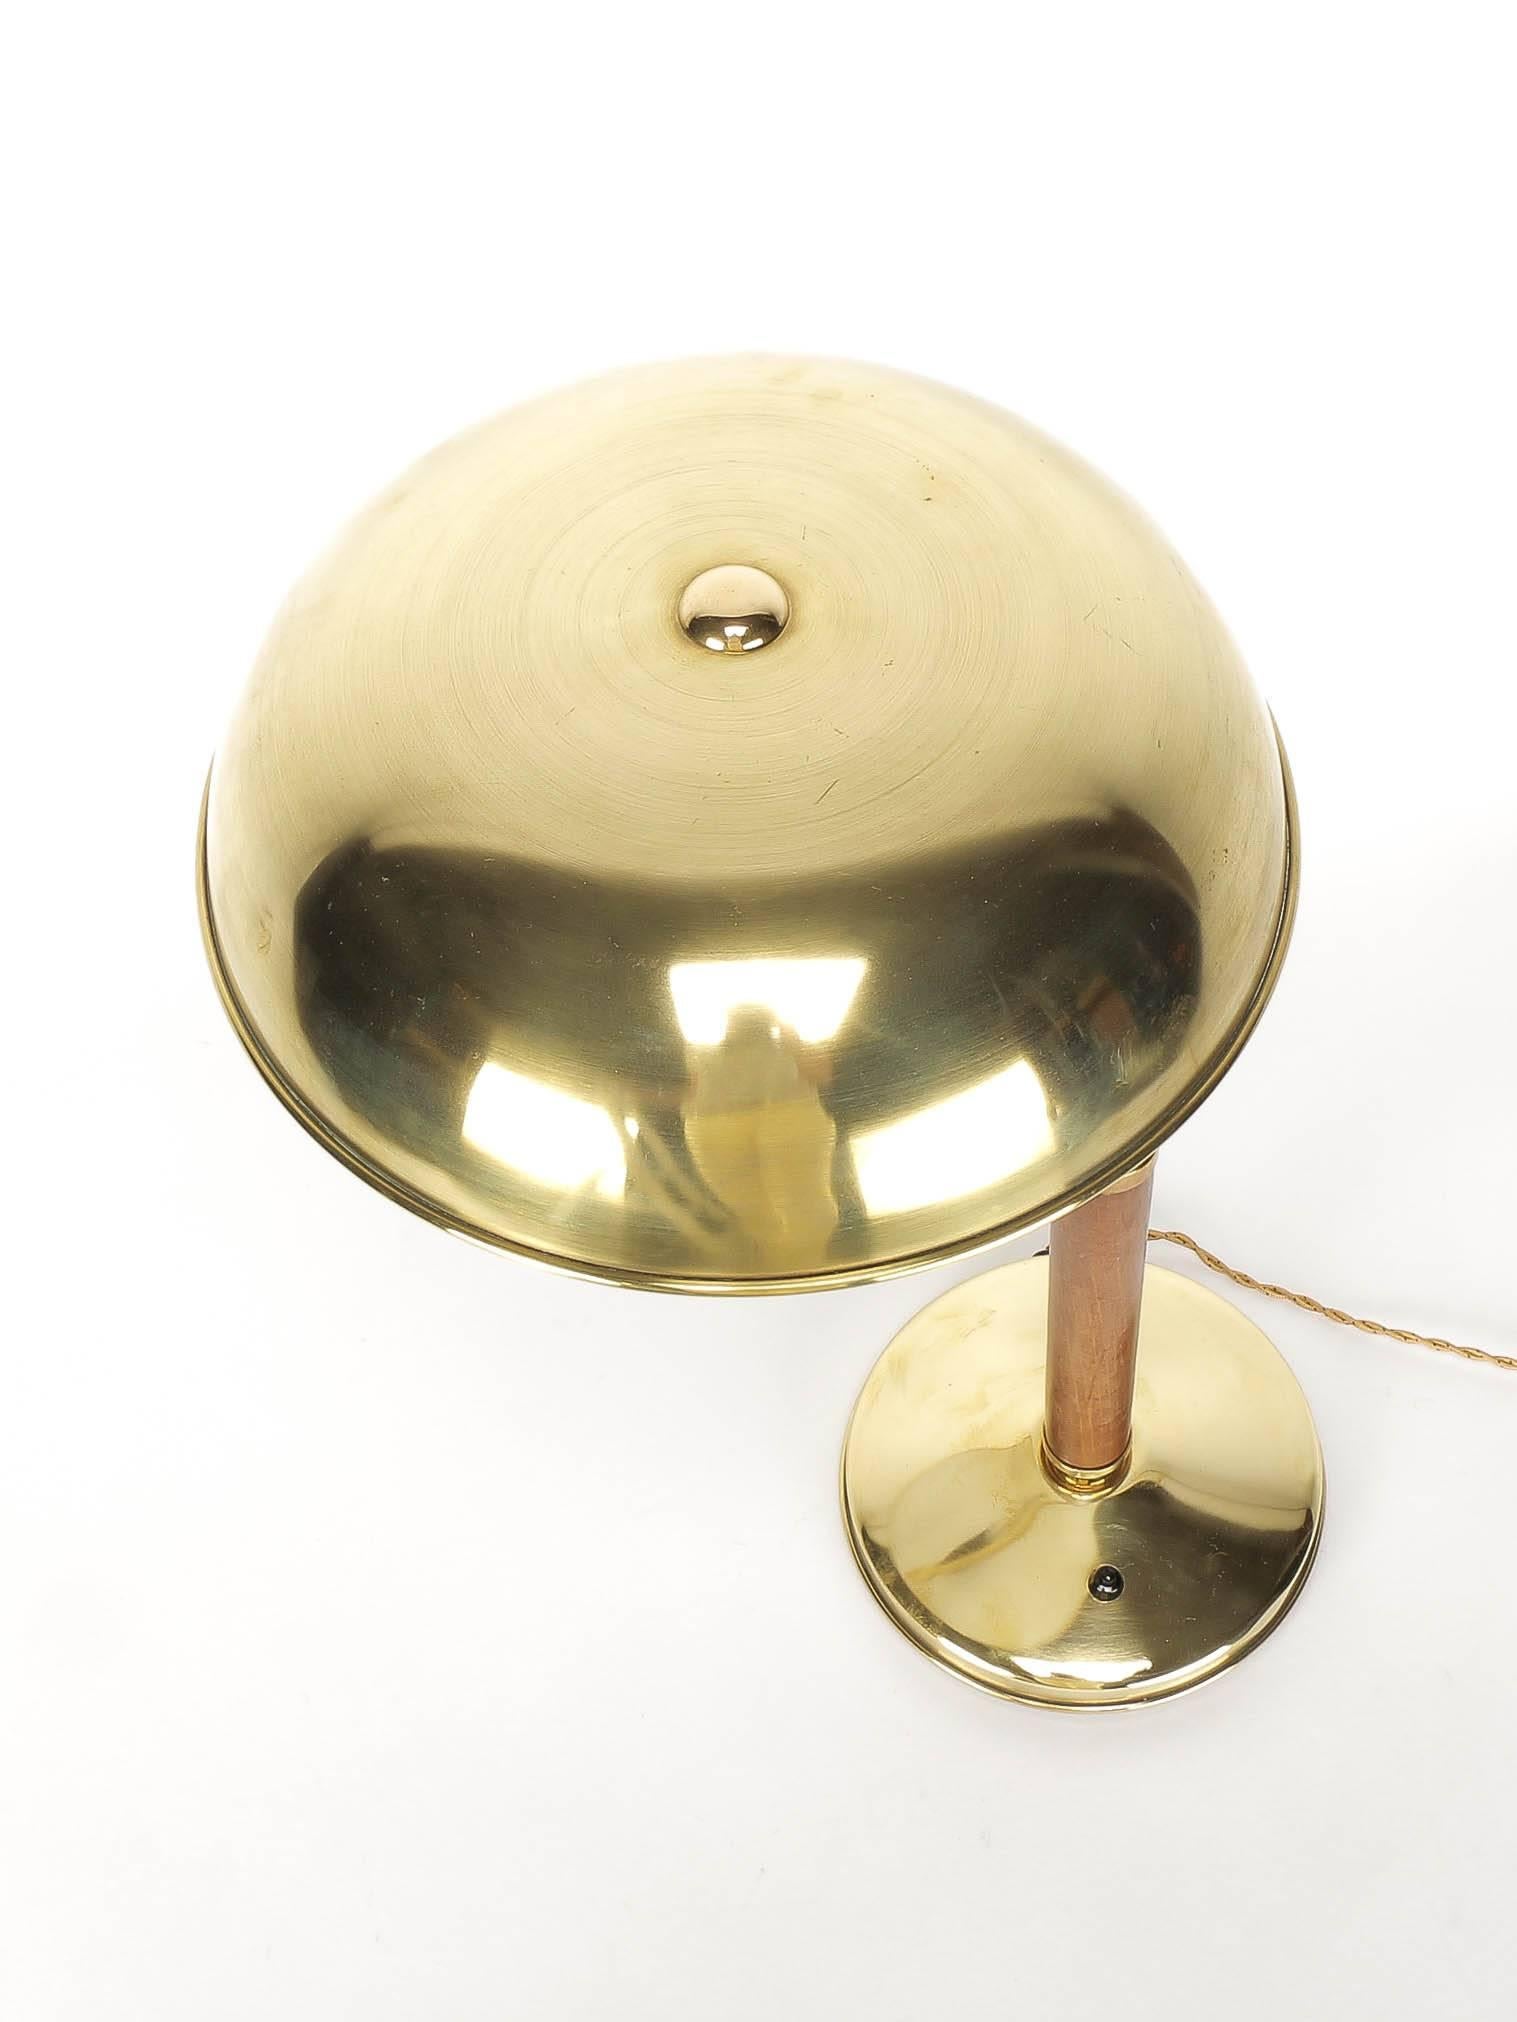 Mid-20th Century Swiss Bauhaus Desk Lamp Brass & Oak by AMBA 1940